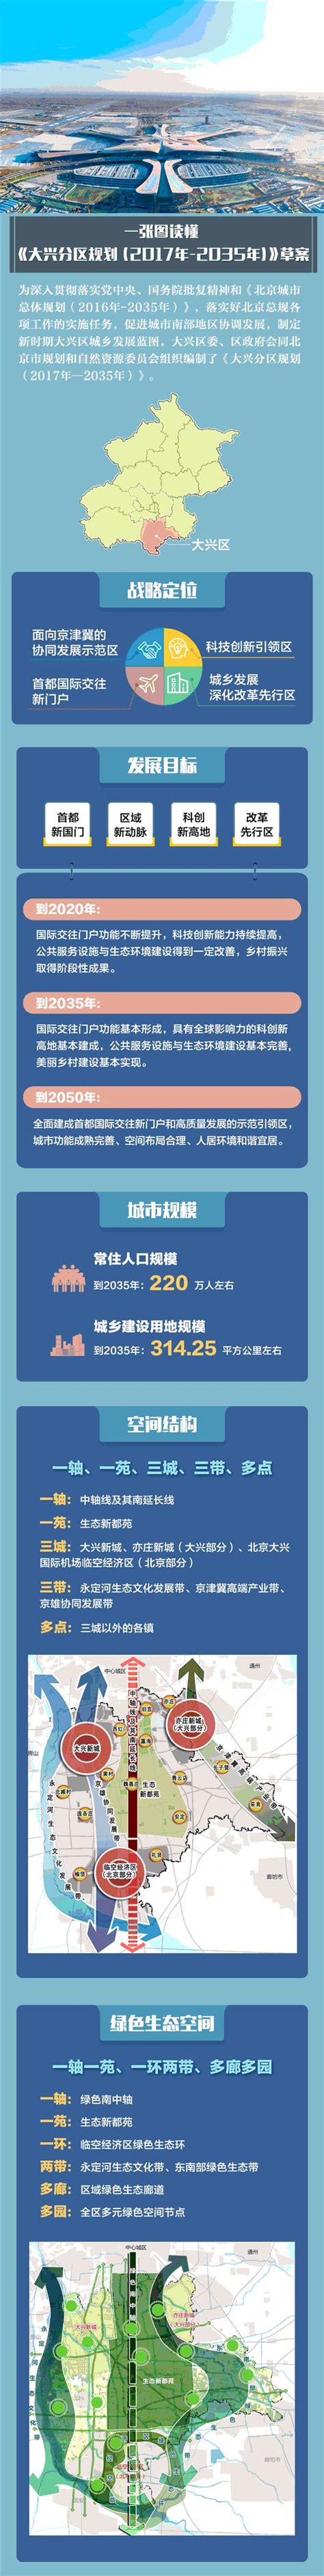 大兴分区规划(2017年-2035年)草案图解- 北京本地宝